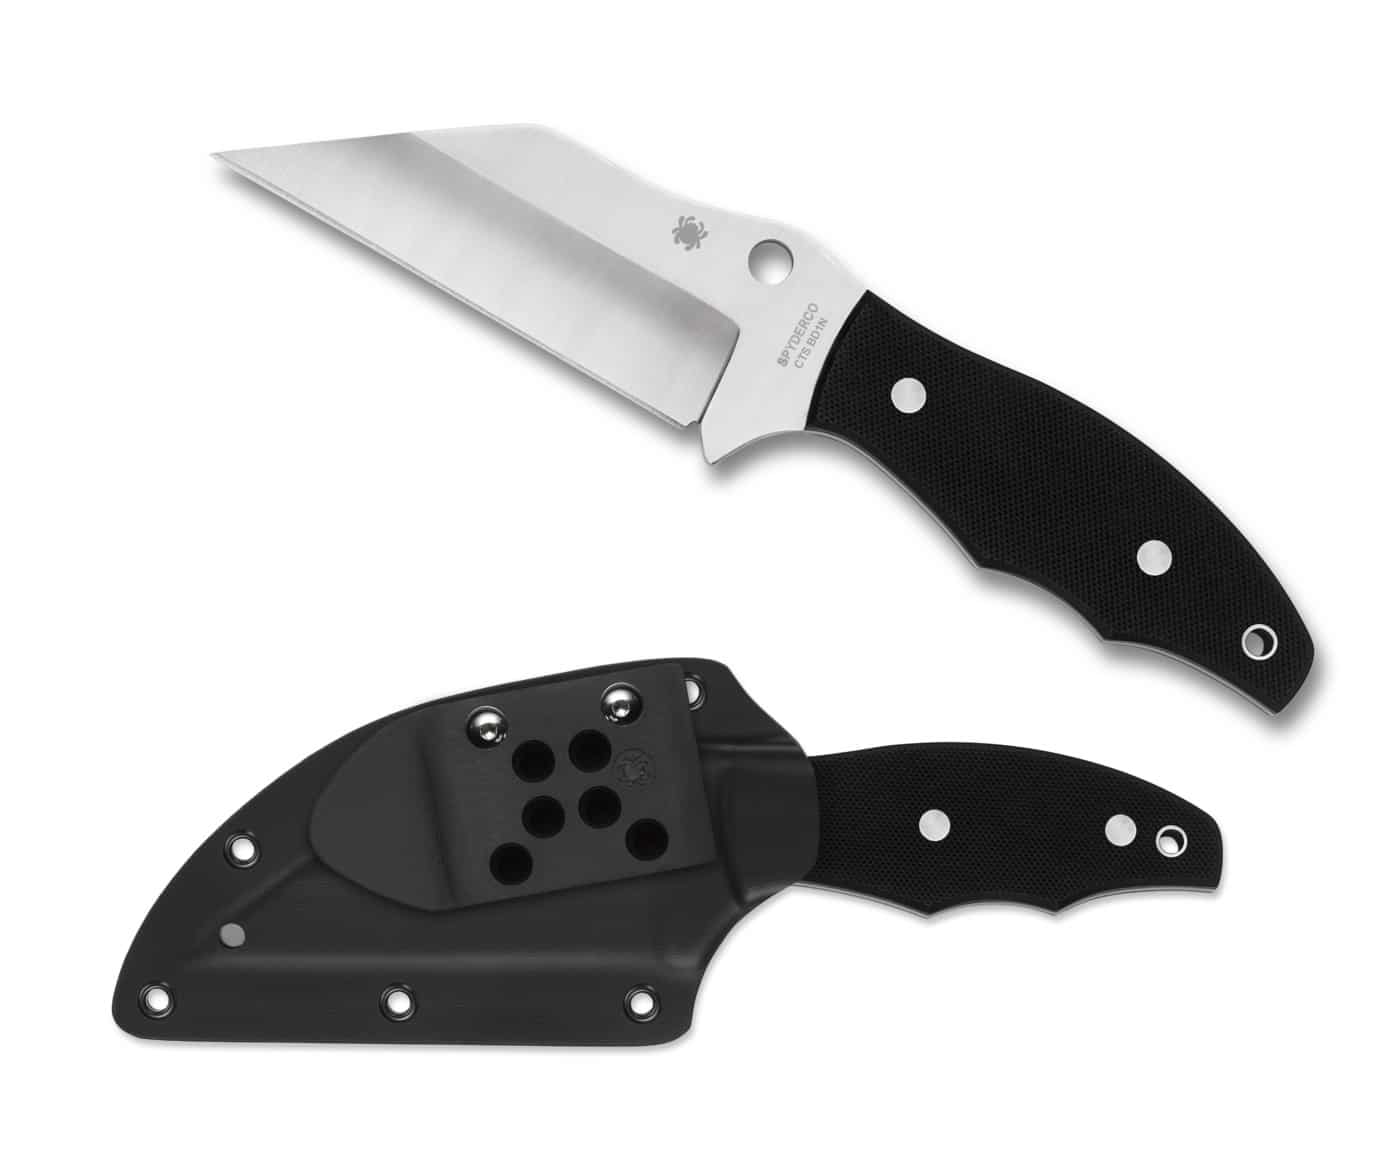 Spyderco Ronin2 knife